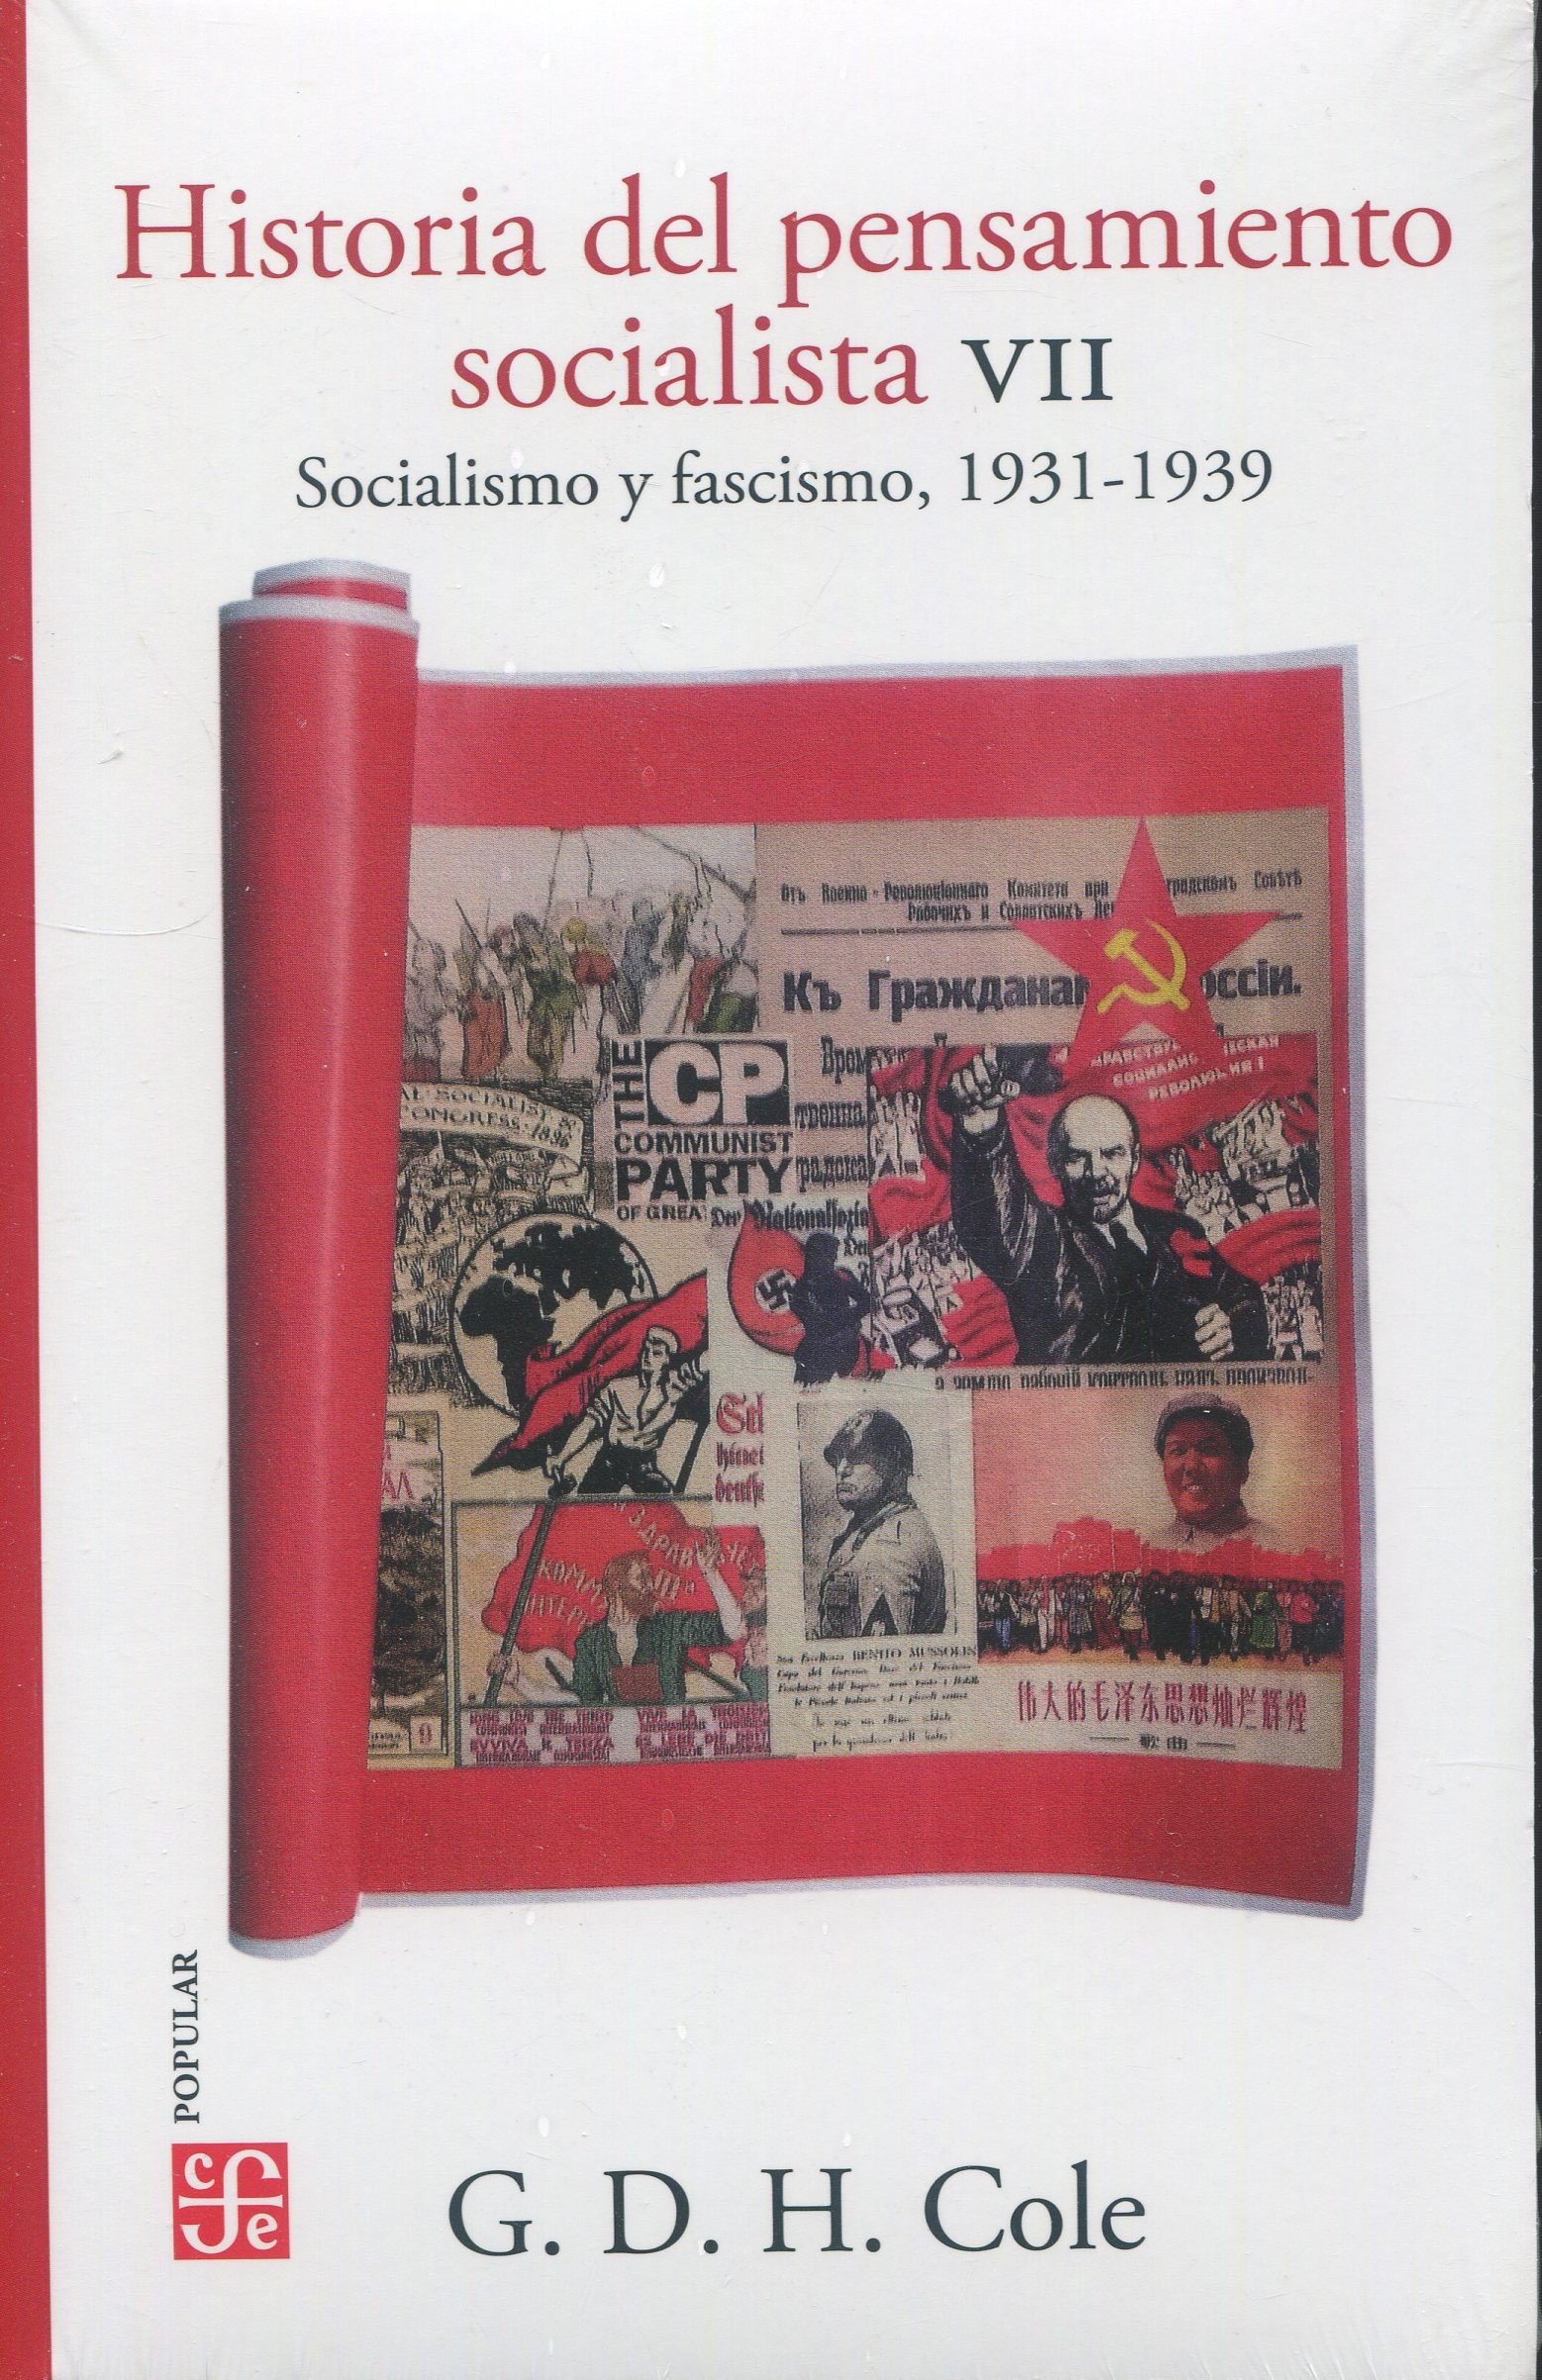 Historia del pensamiento socialista VII. Socialismo y fascismo 1931-1939